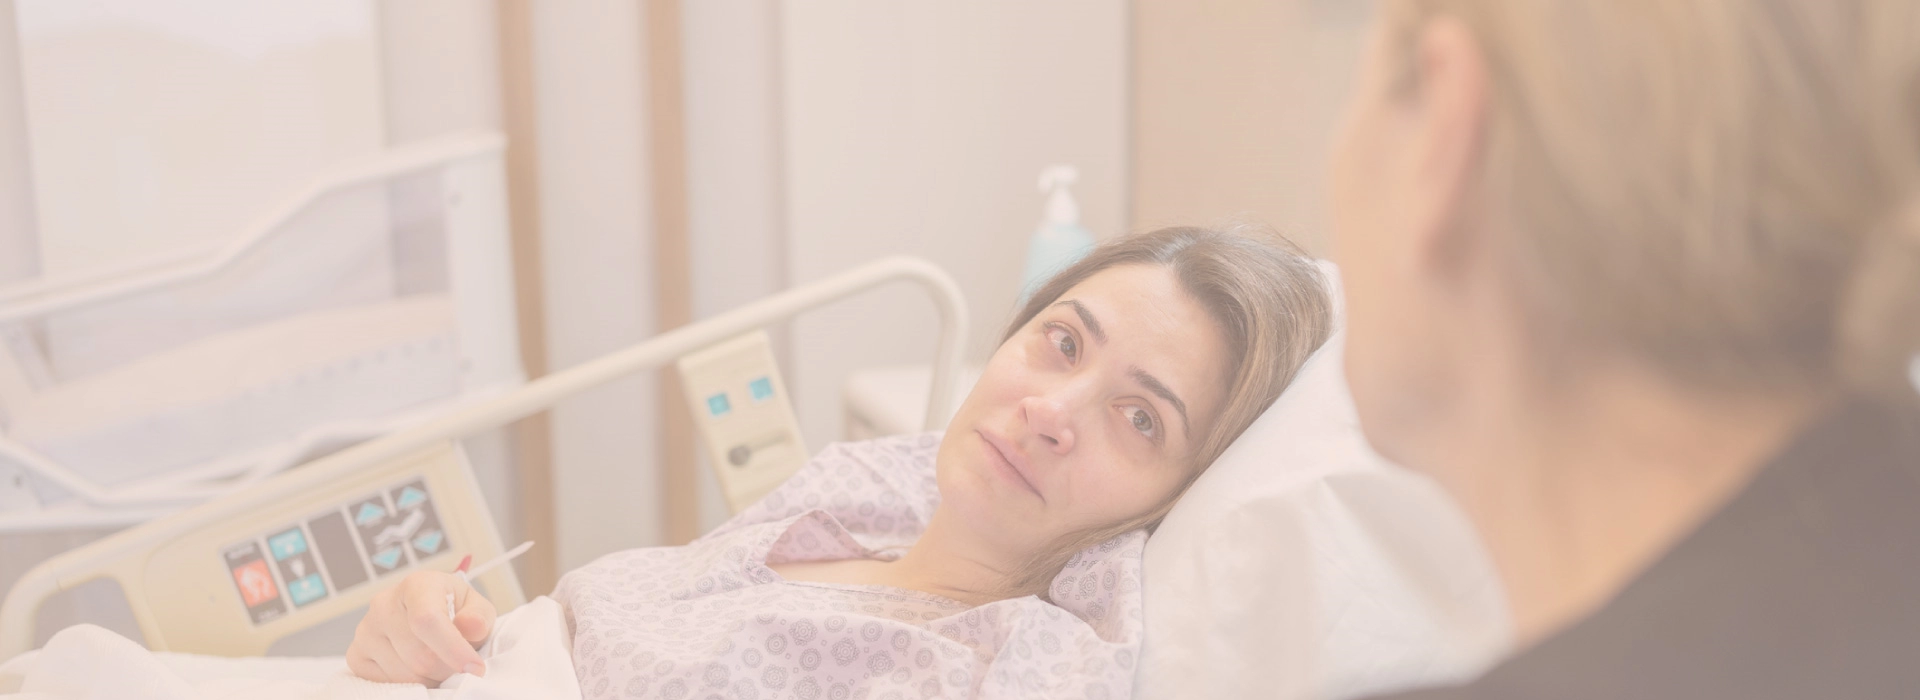 kobieta leży w łóżku szpitalnym po zabiegu